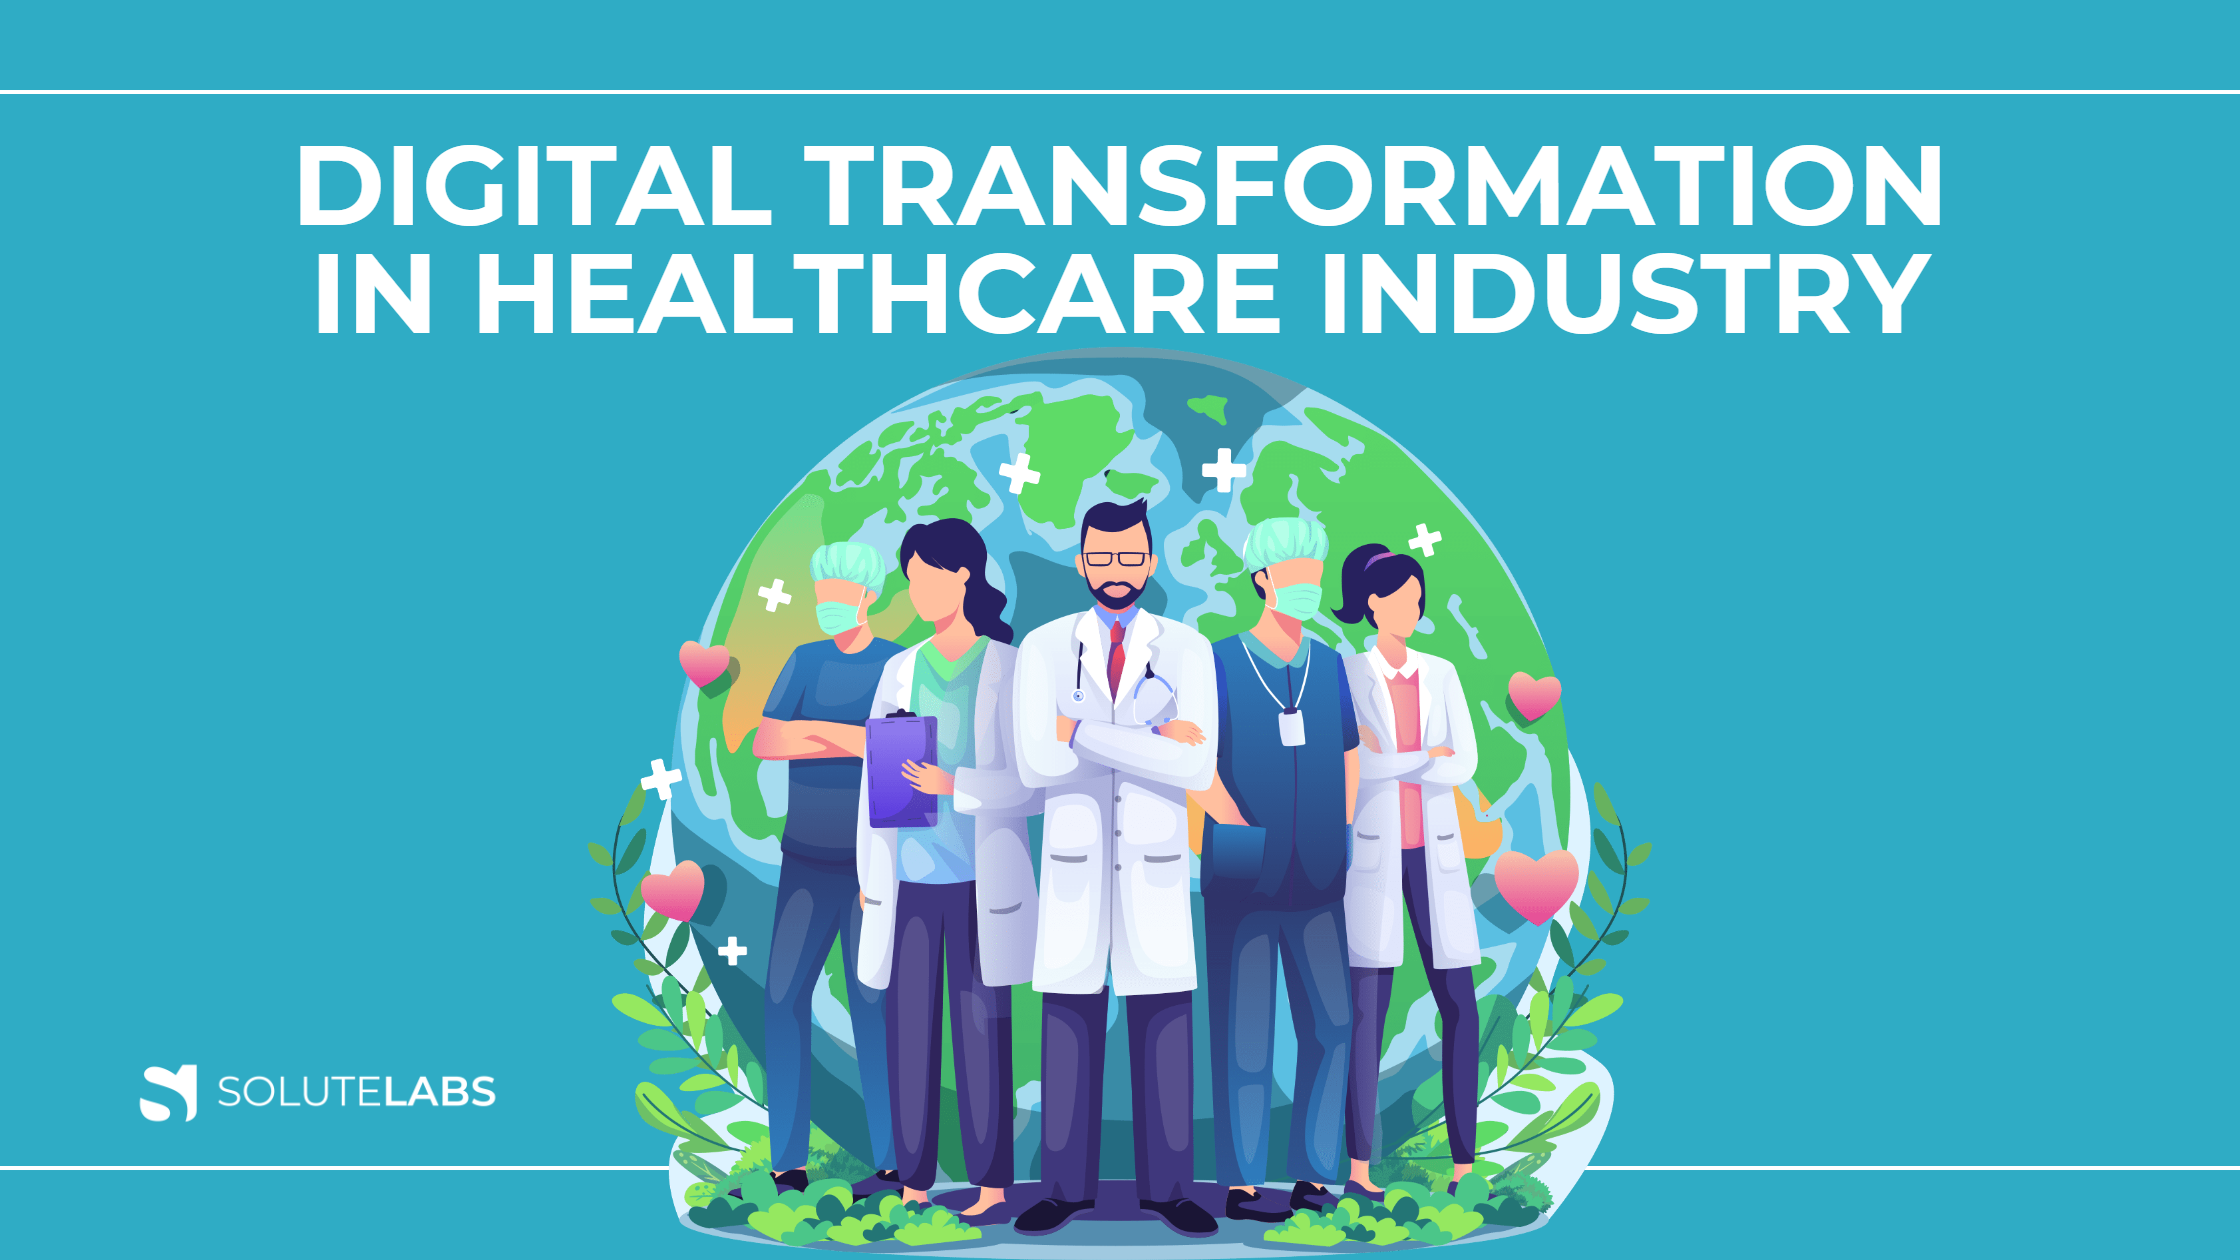 Digital Transformation in Healthcare